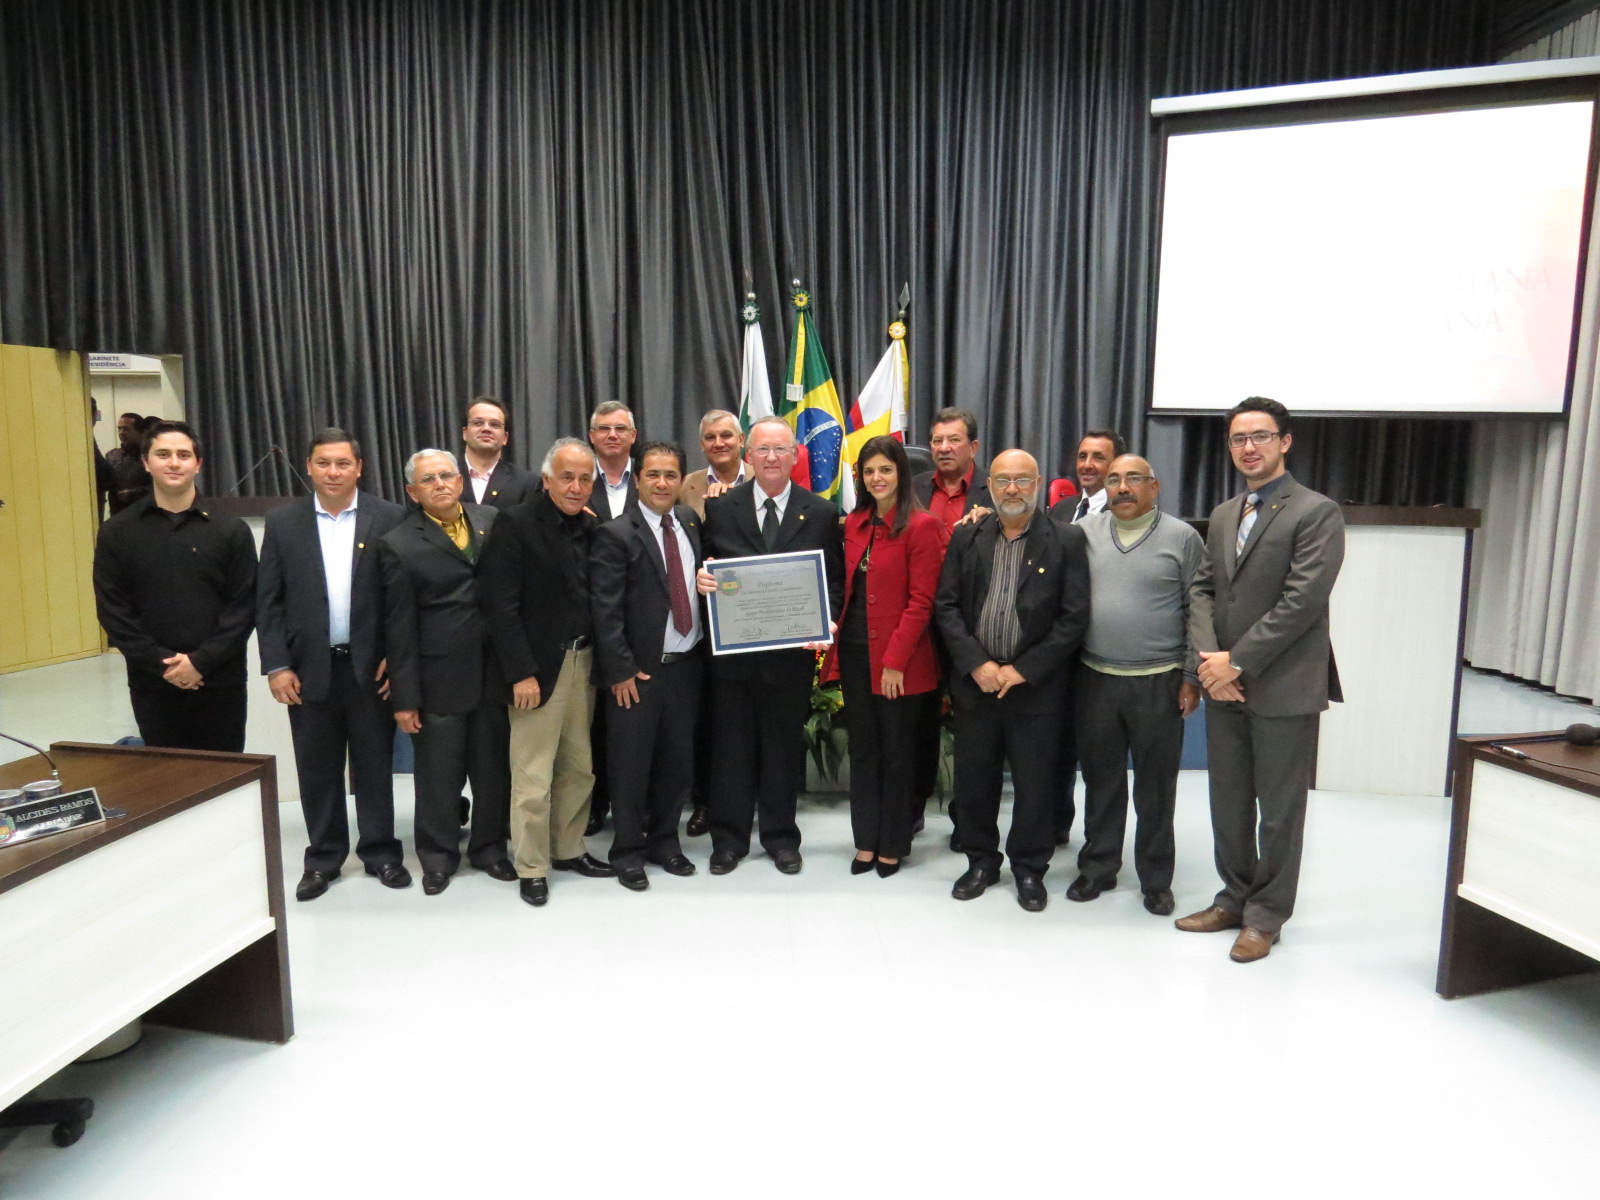 Igreja Presbiteriana do Brasil recebe Diploma de Méritos em Tarefas Comunitárias